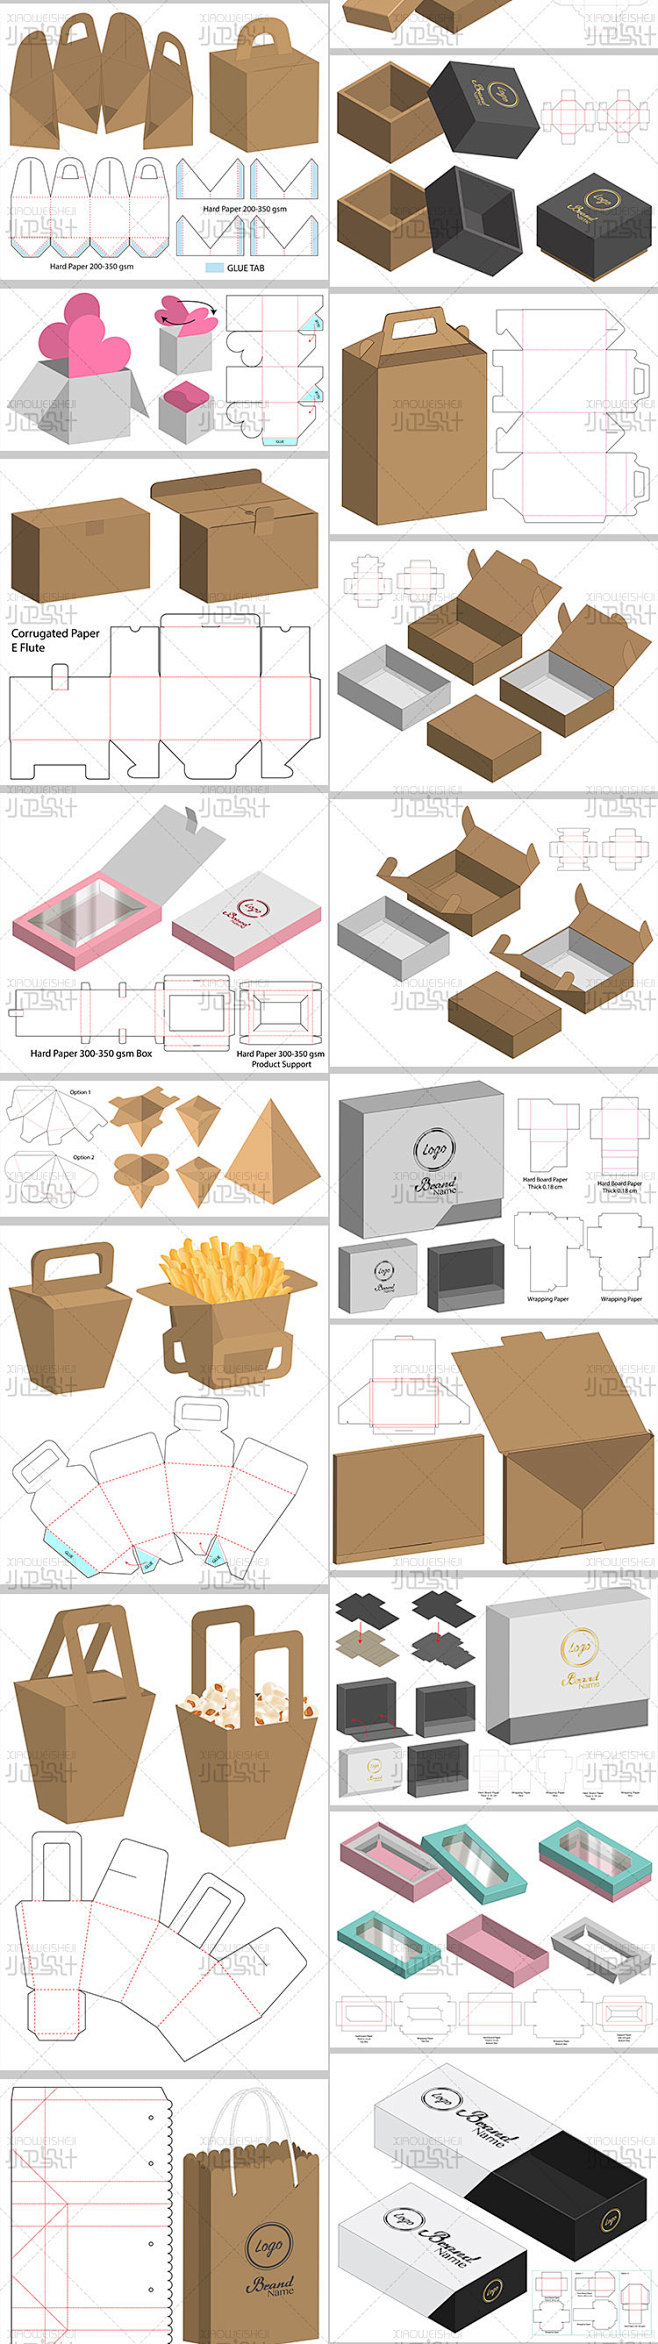 3D展示模板各类产品包装盒子纸箱设计稿刀...